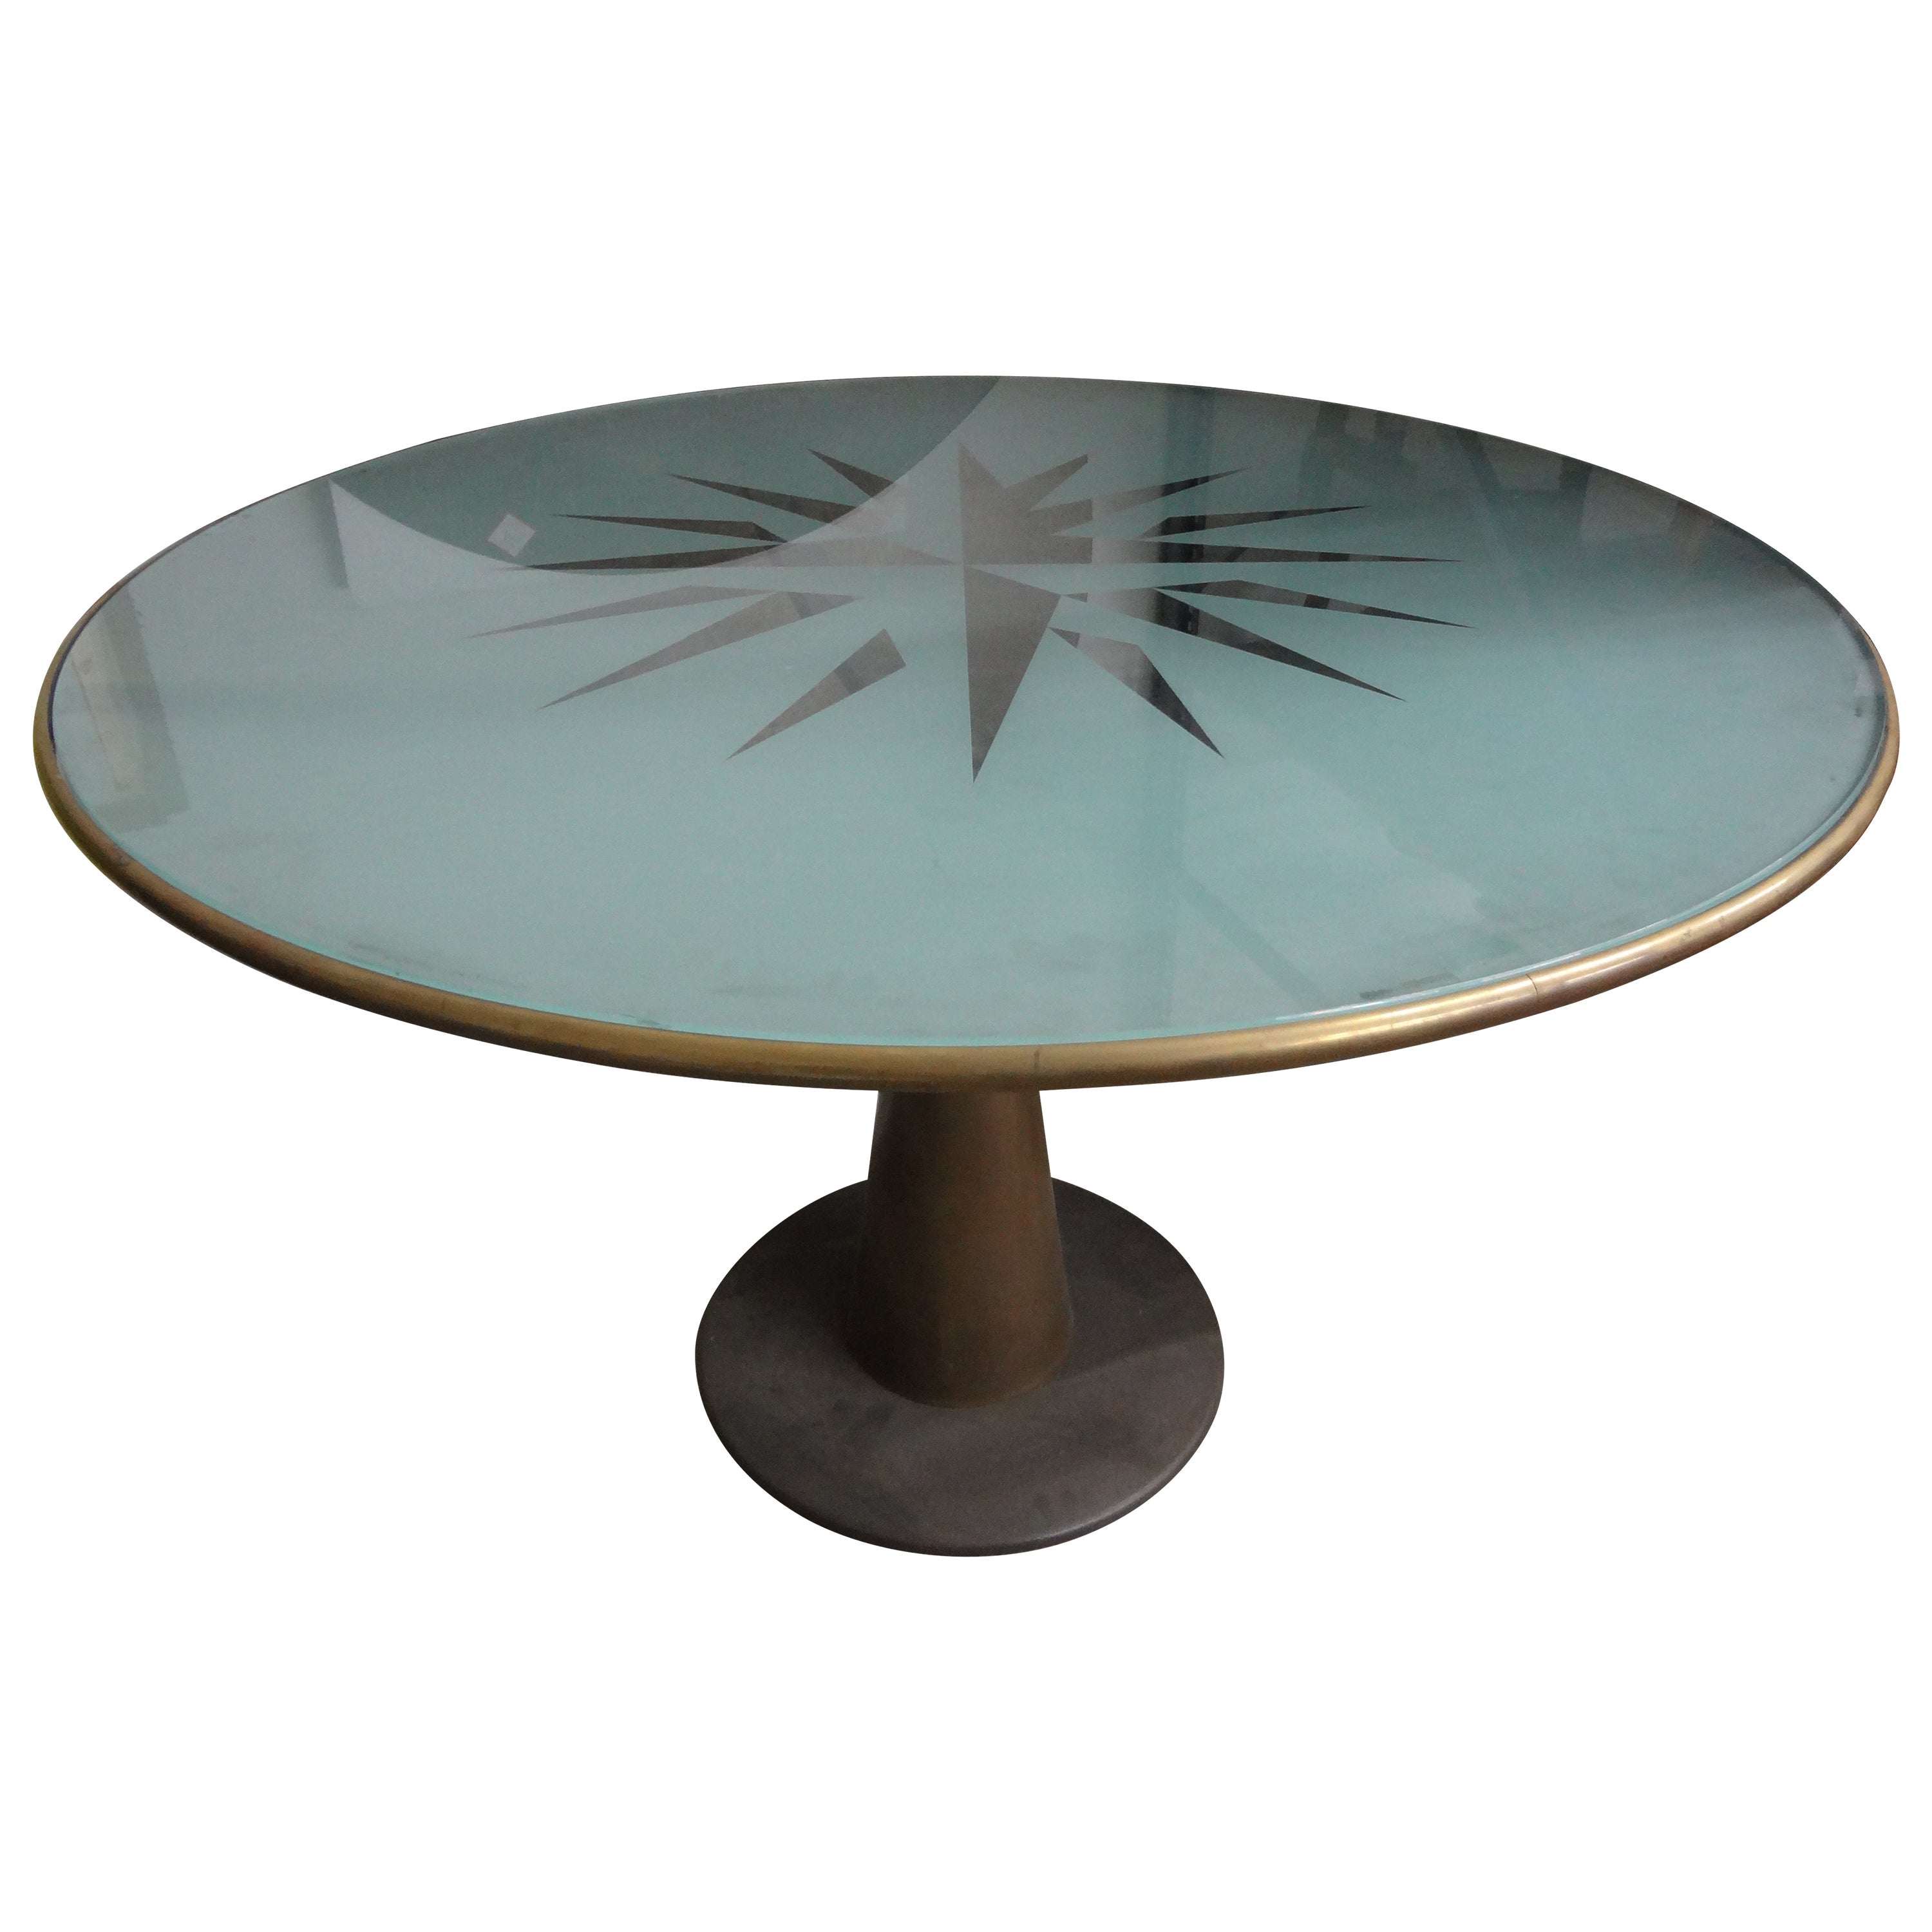 Italian Modern Astrolabio Center Table By Oscar Tusquets For Sale